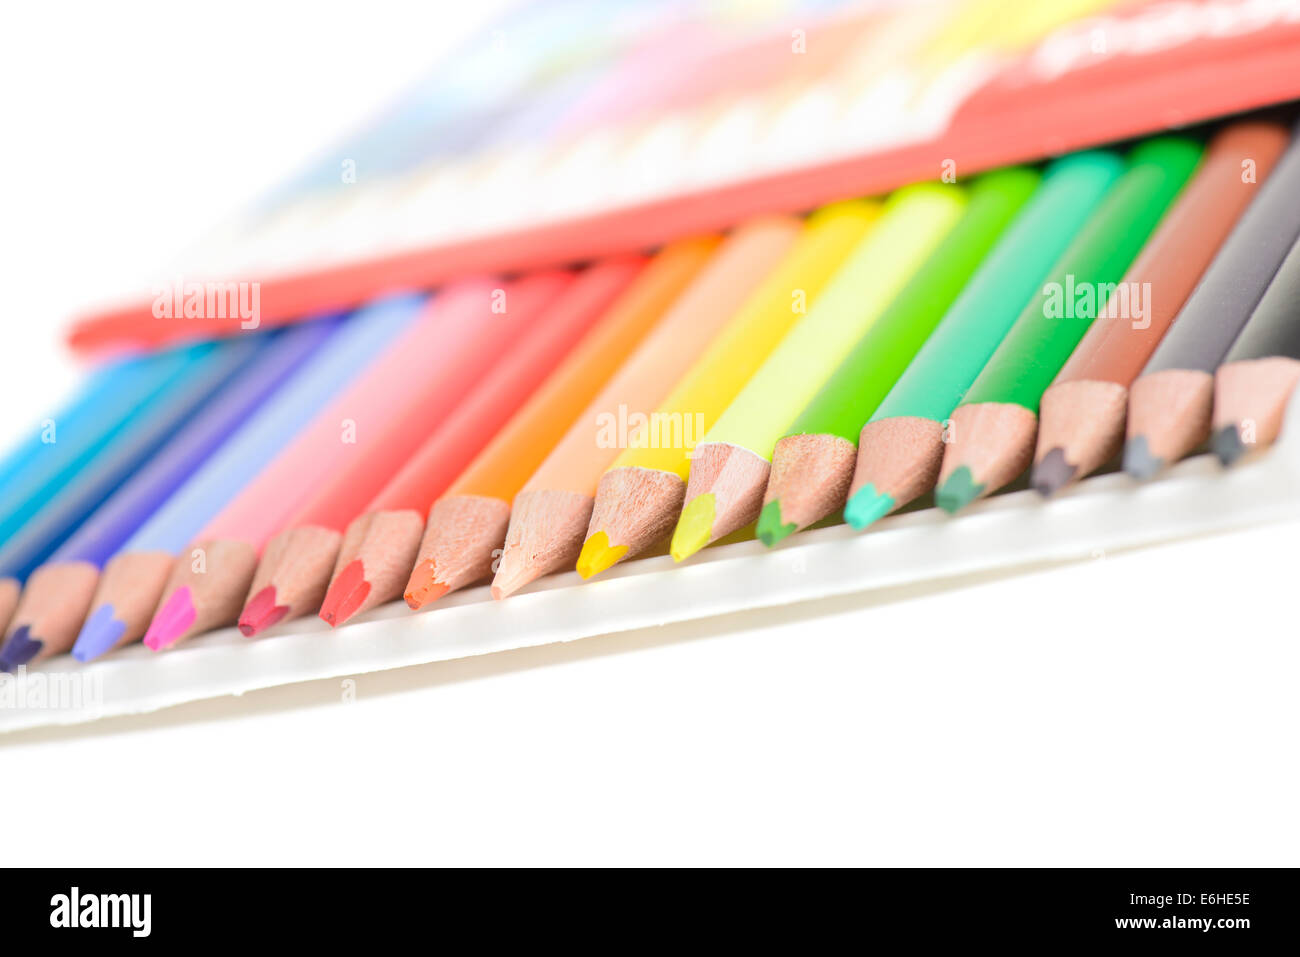 https://c8.alamy.com/comp/E6HE5E/colored-pencils-in-box-E6HE5E.jpg